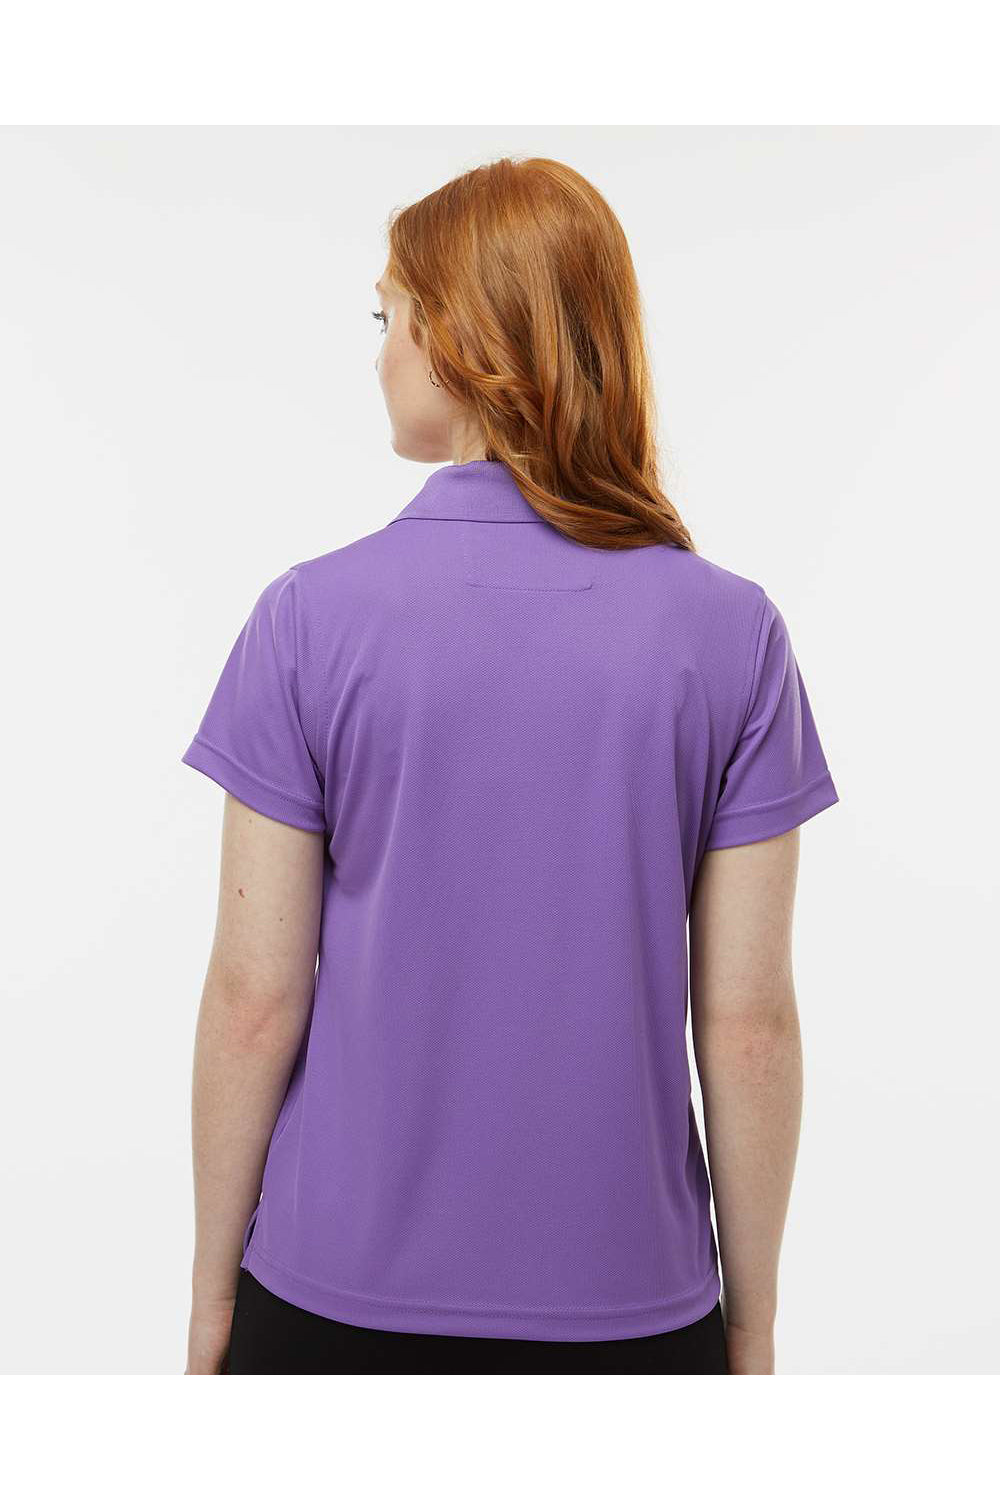 Paragon 104 Womens Saratoga Performance Mini Mesh Short Sleeve Polo Shirt Grape Purple Model Back